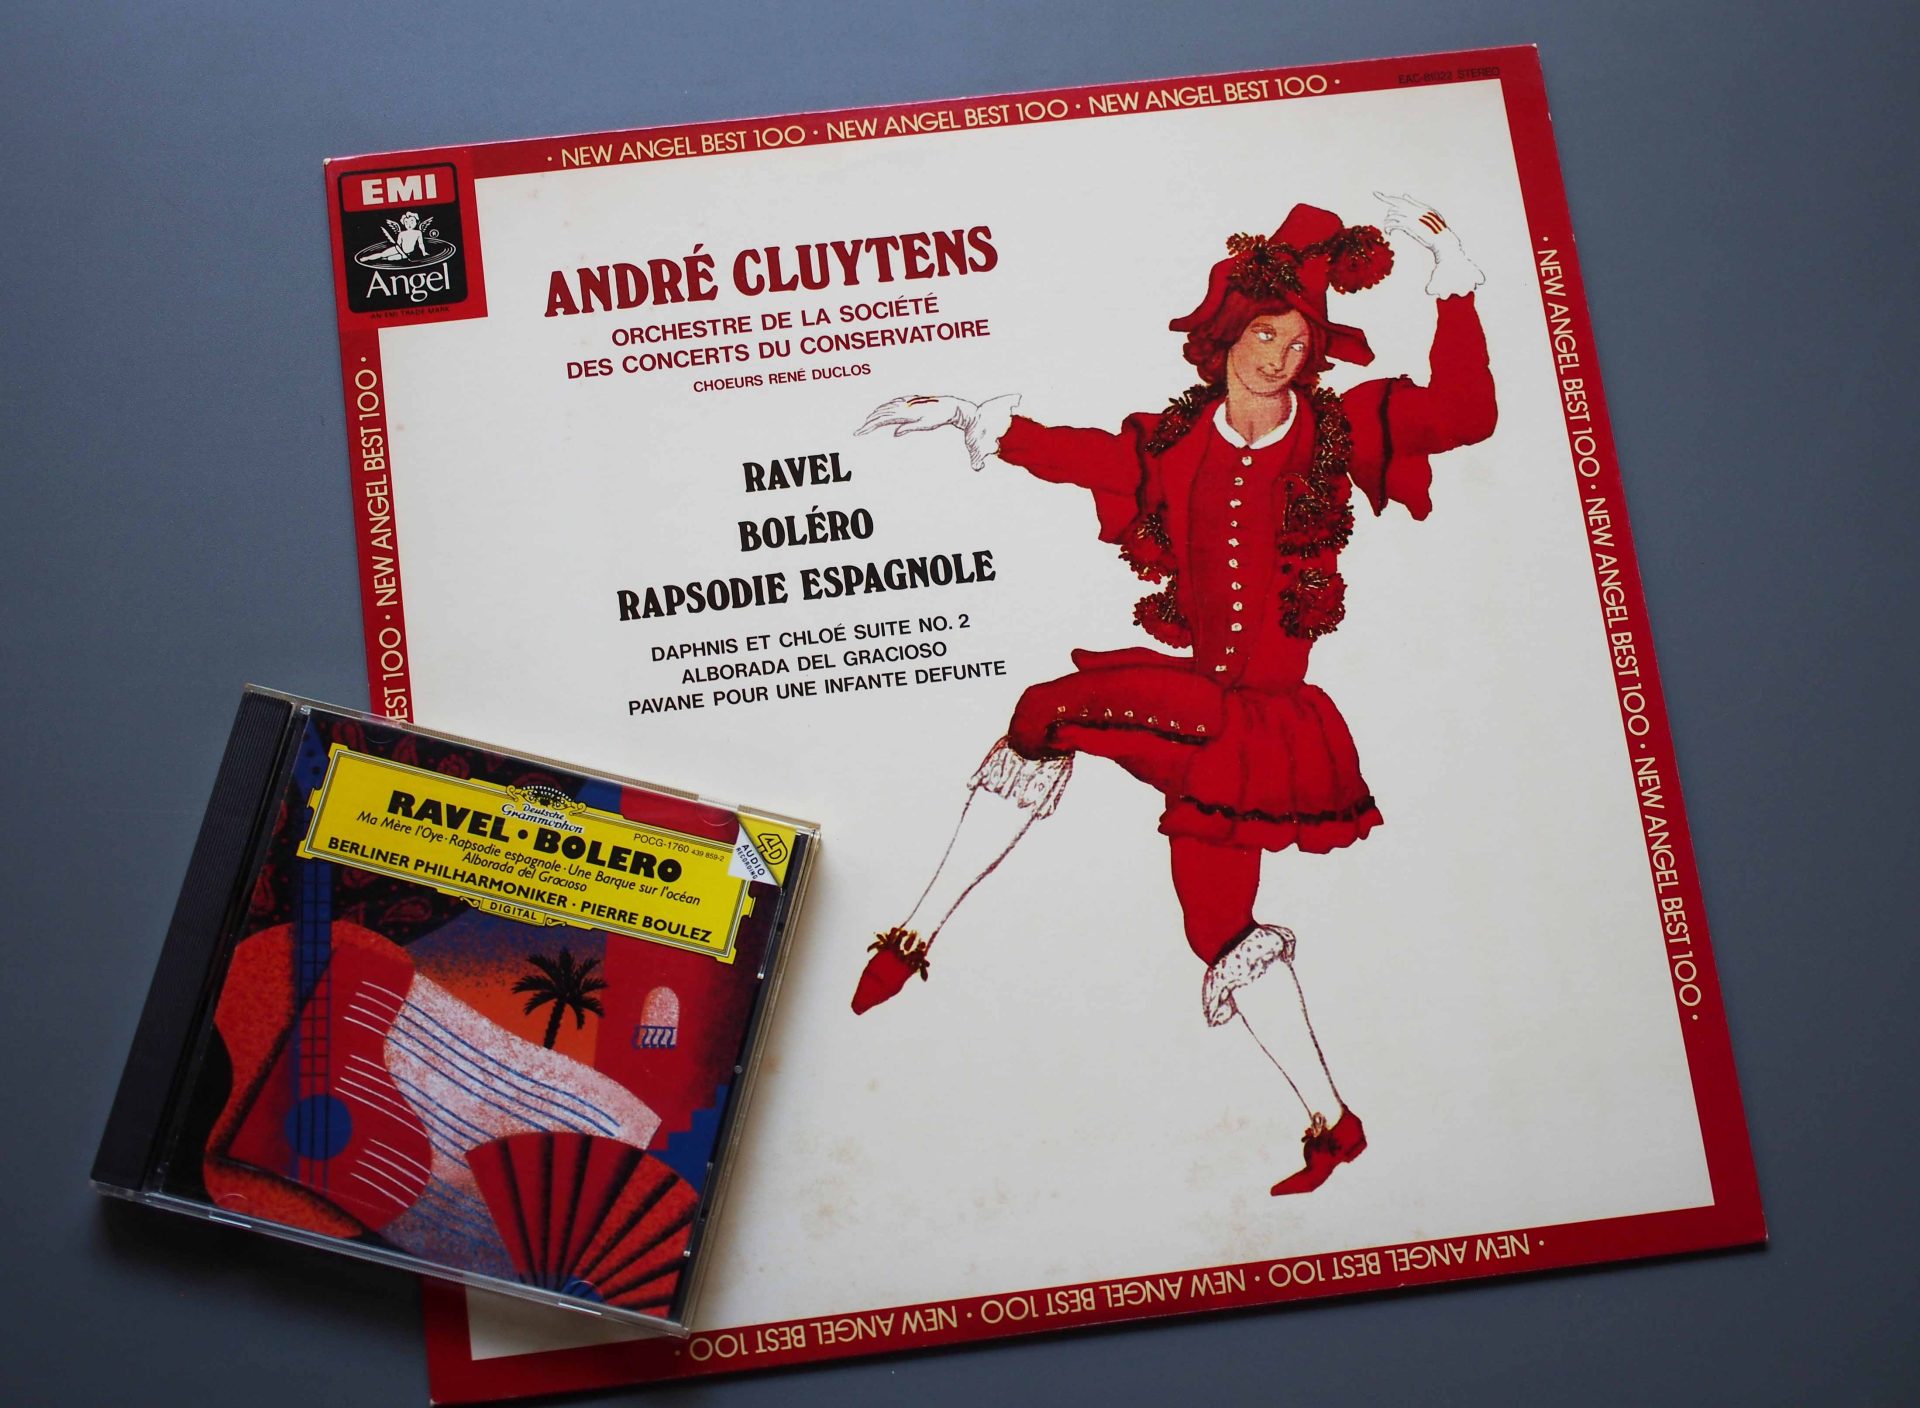 モーリス・ラベル作曲／バレエ音楽「ボレロ」のアナログ盤、CD盤について | s.d.j.acoustics